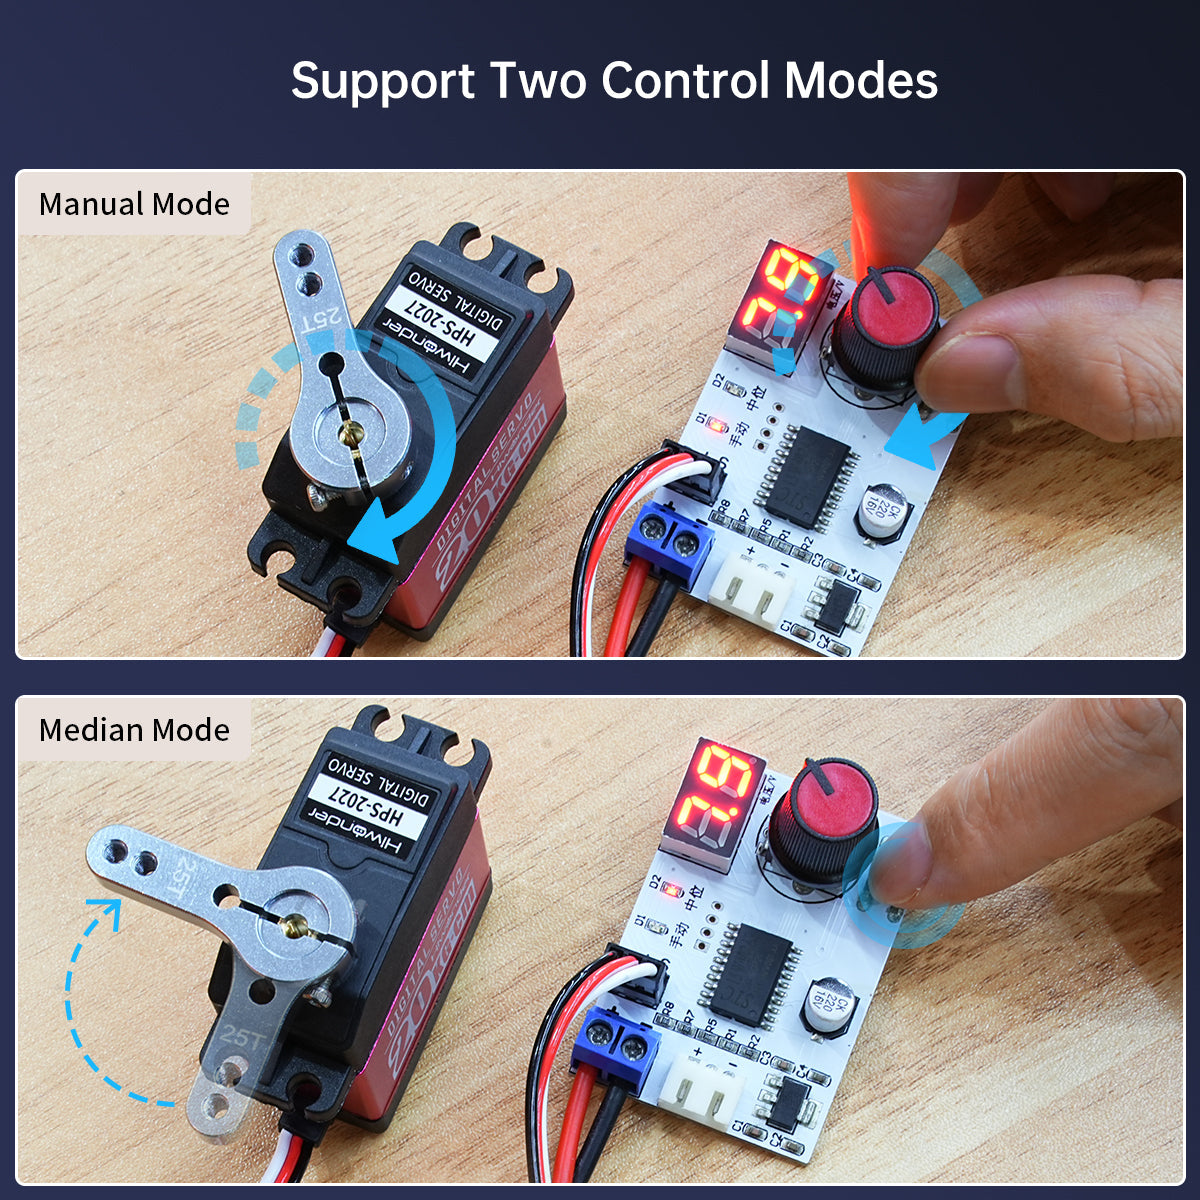 Hiwonder Digital Servo Tester Controller with Voltage Display